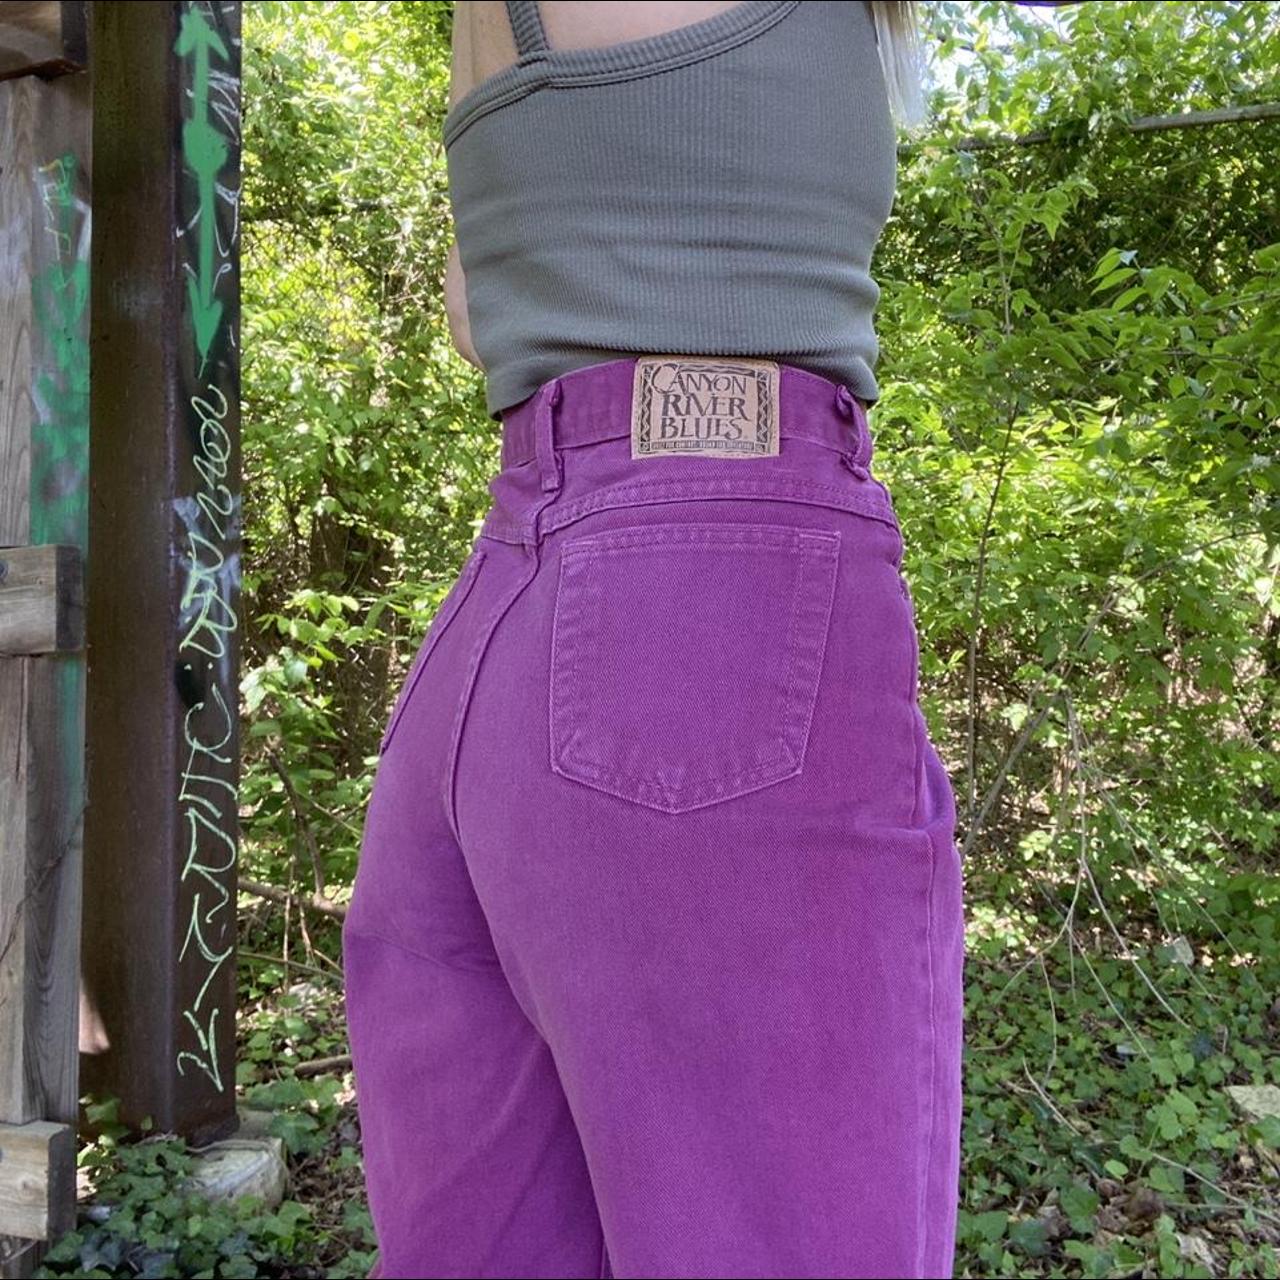 Canyon River Blues Women's Purple Jeans (4)